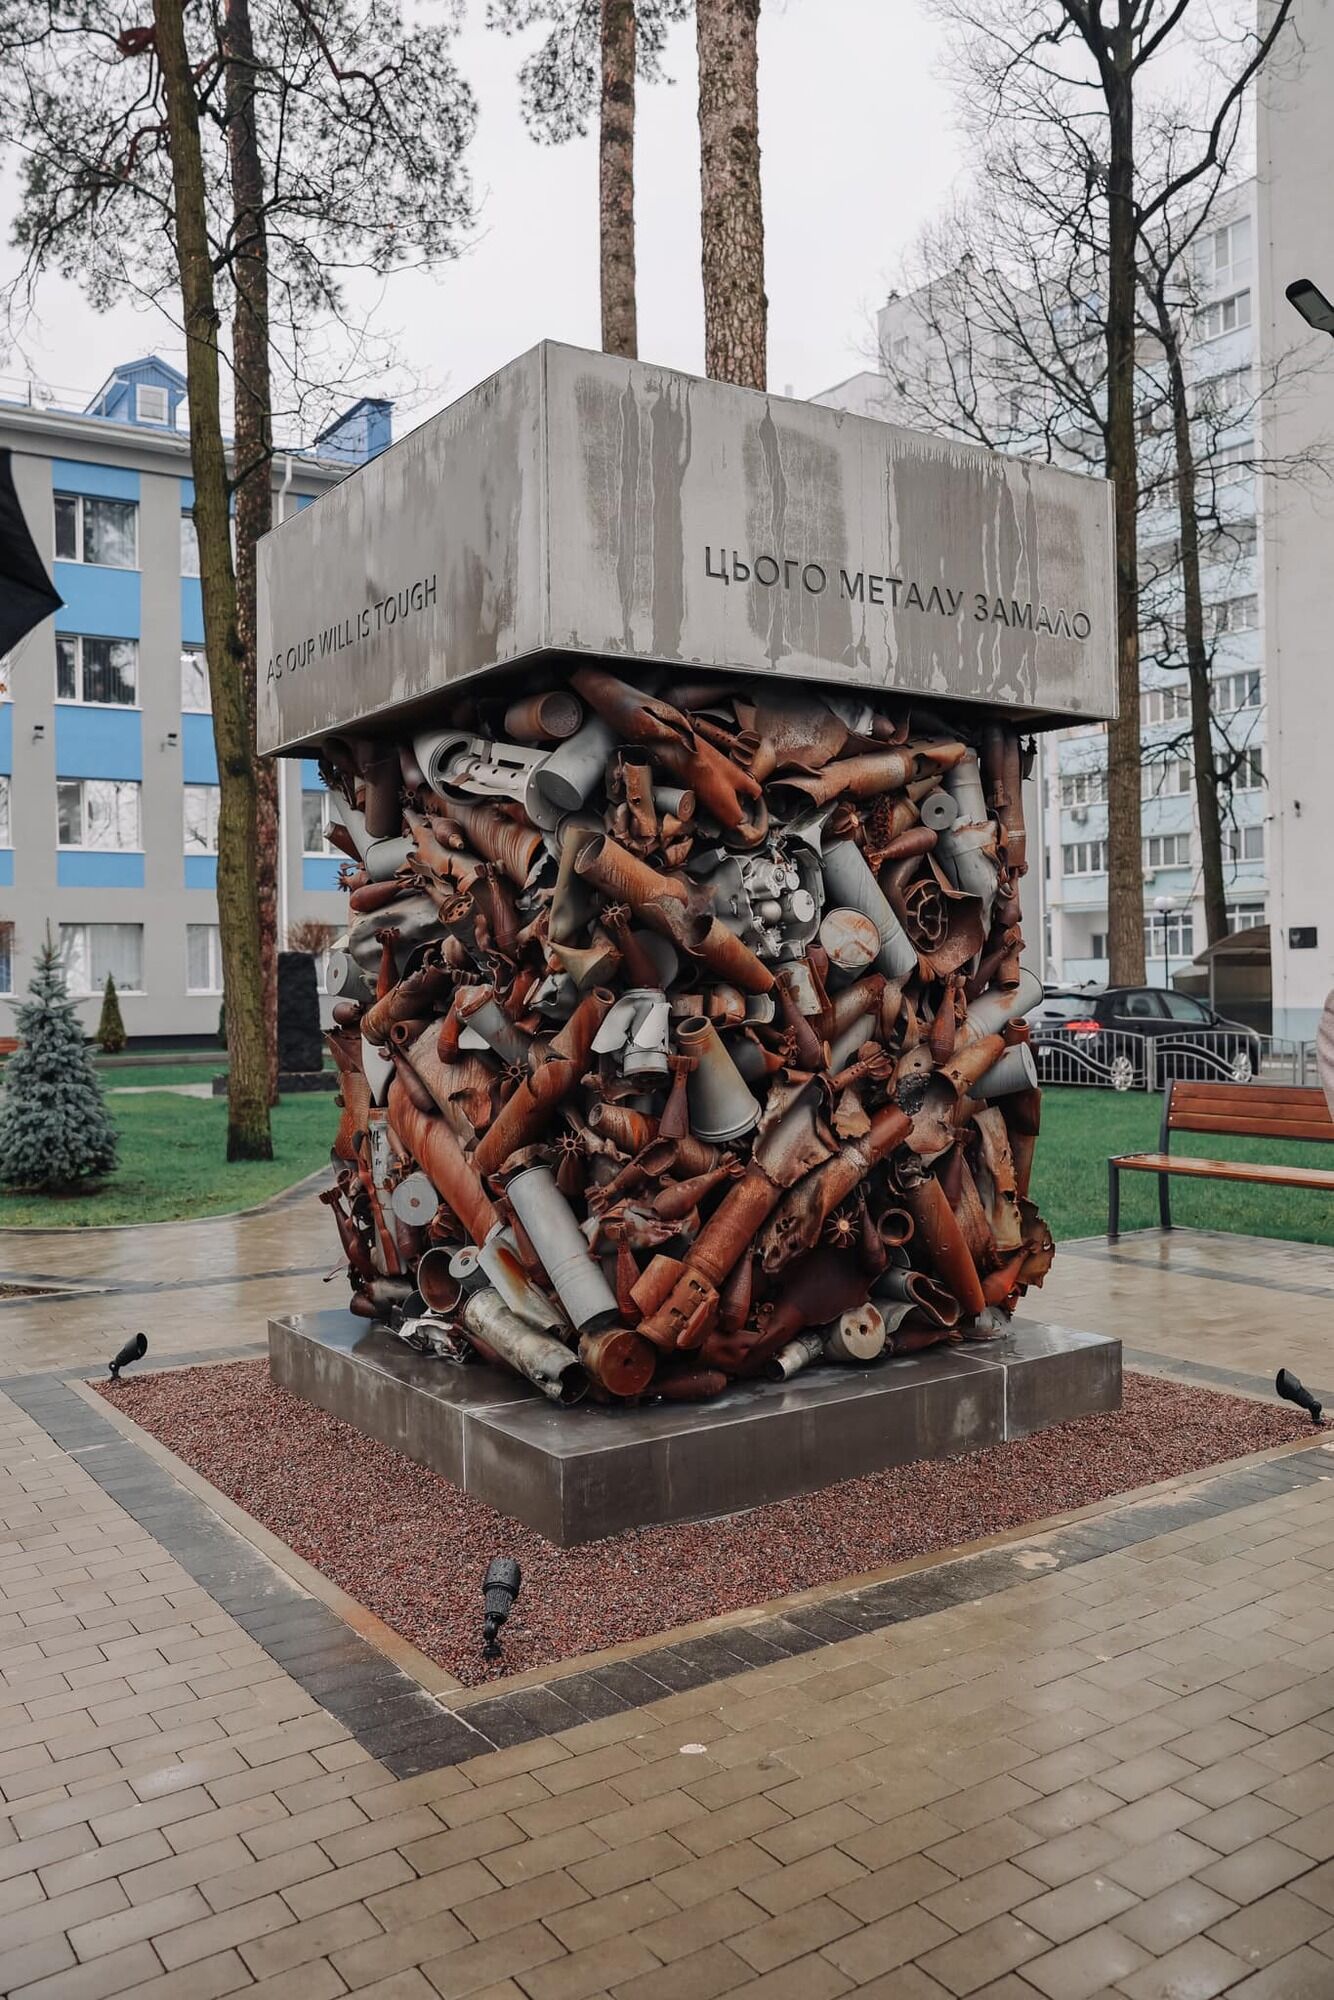 Створений з ракет, якими обстрілювали місто: в Ірпені відкрили монумент "ВОЛЯ". Фото і подробиці